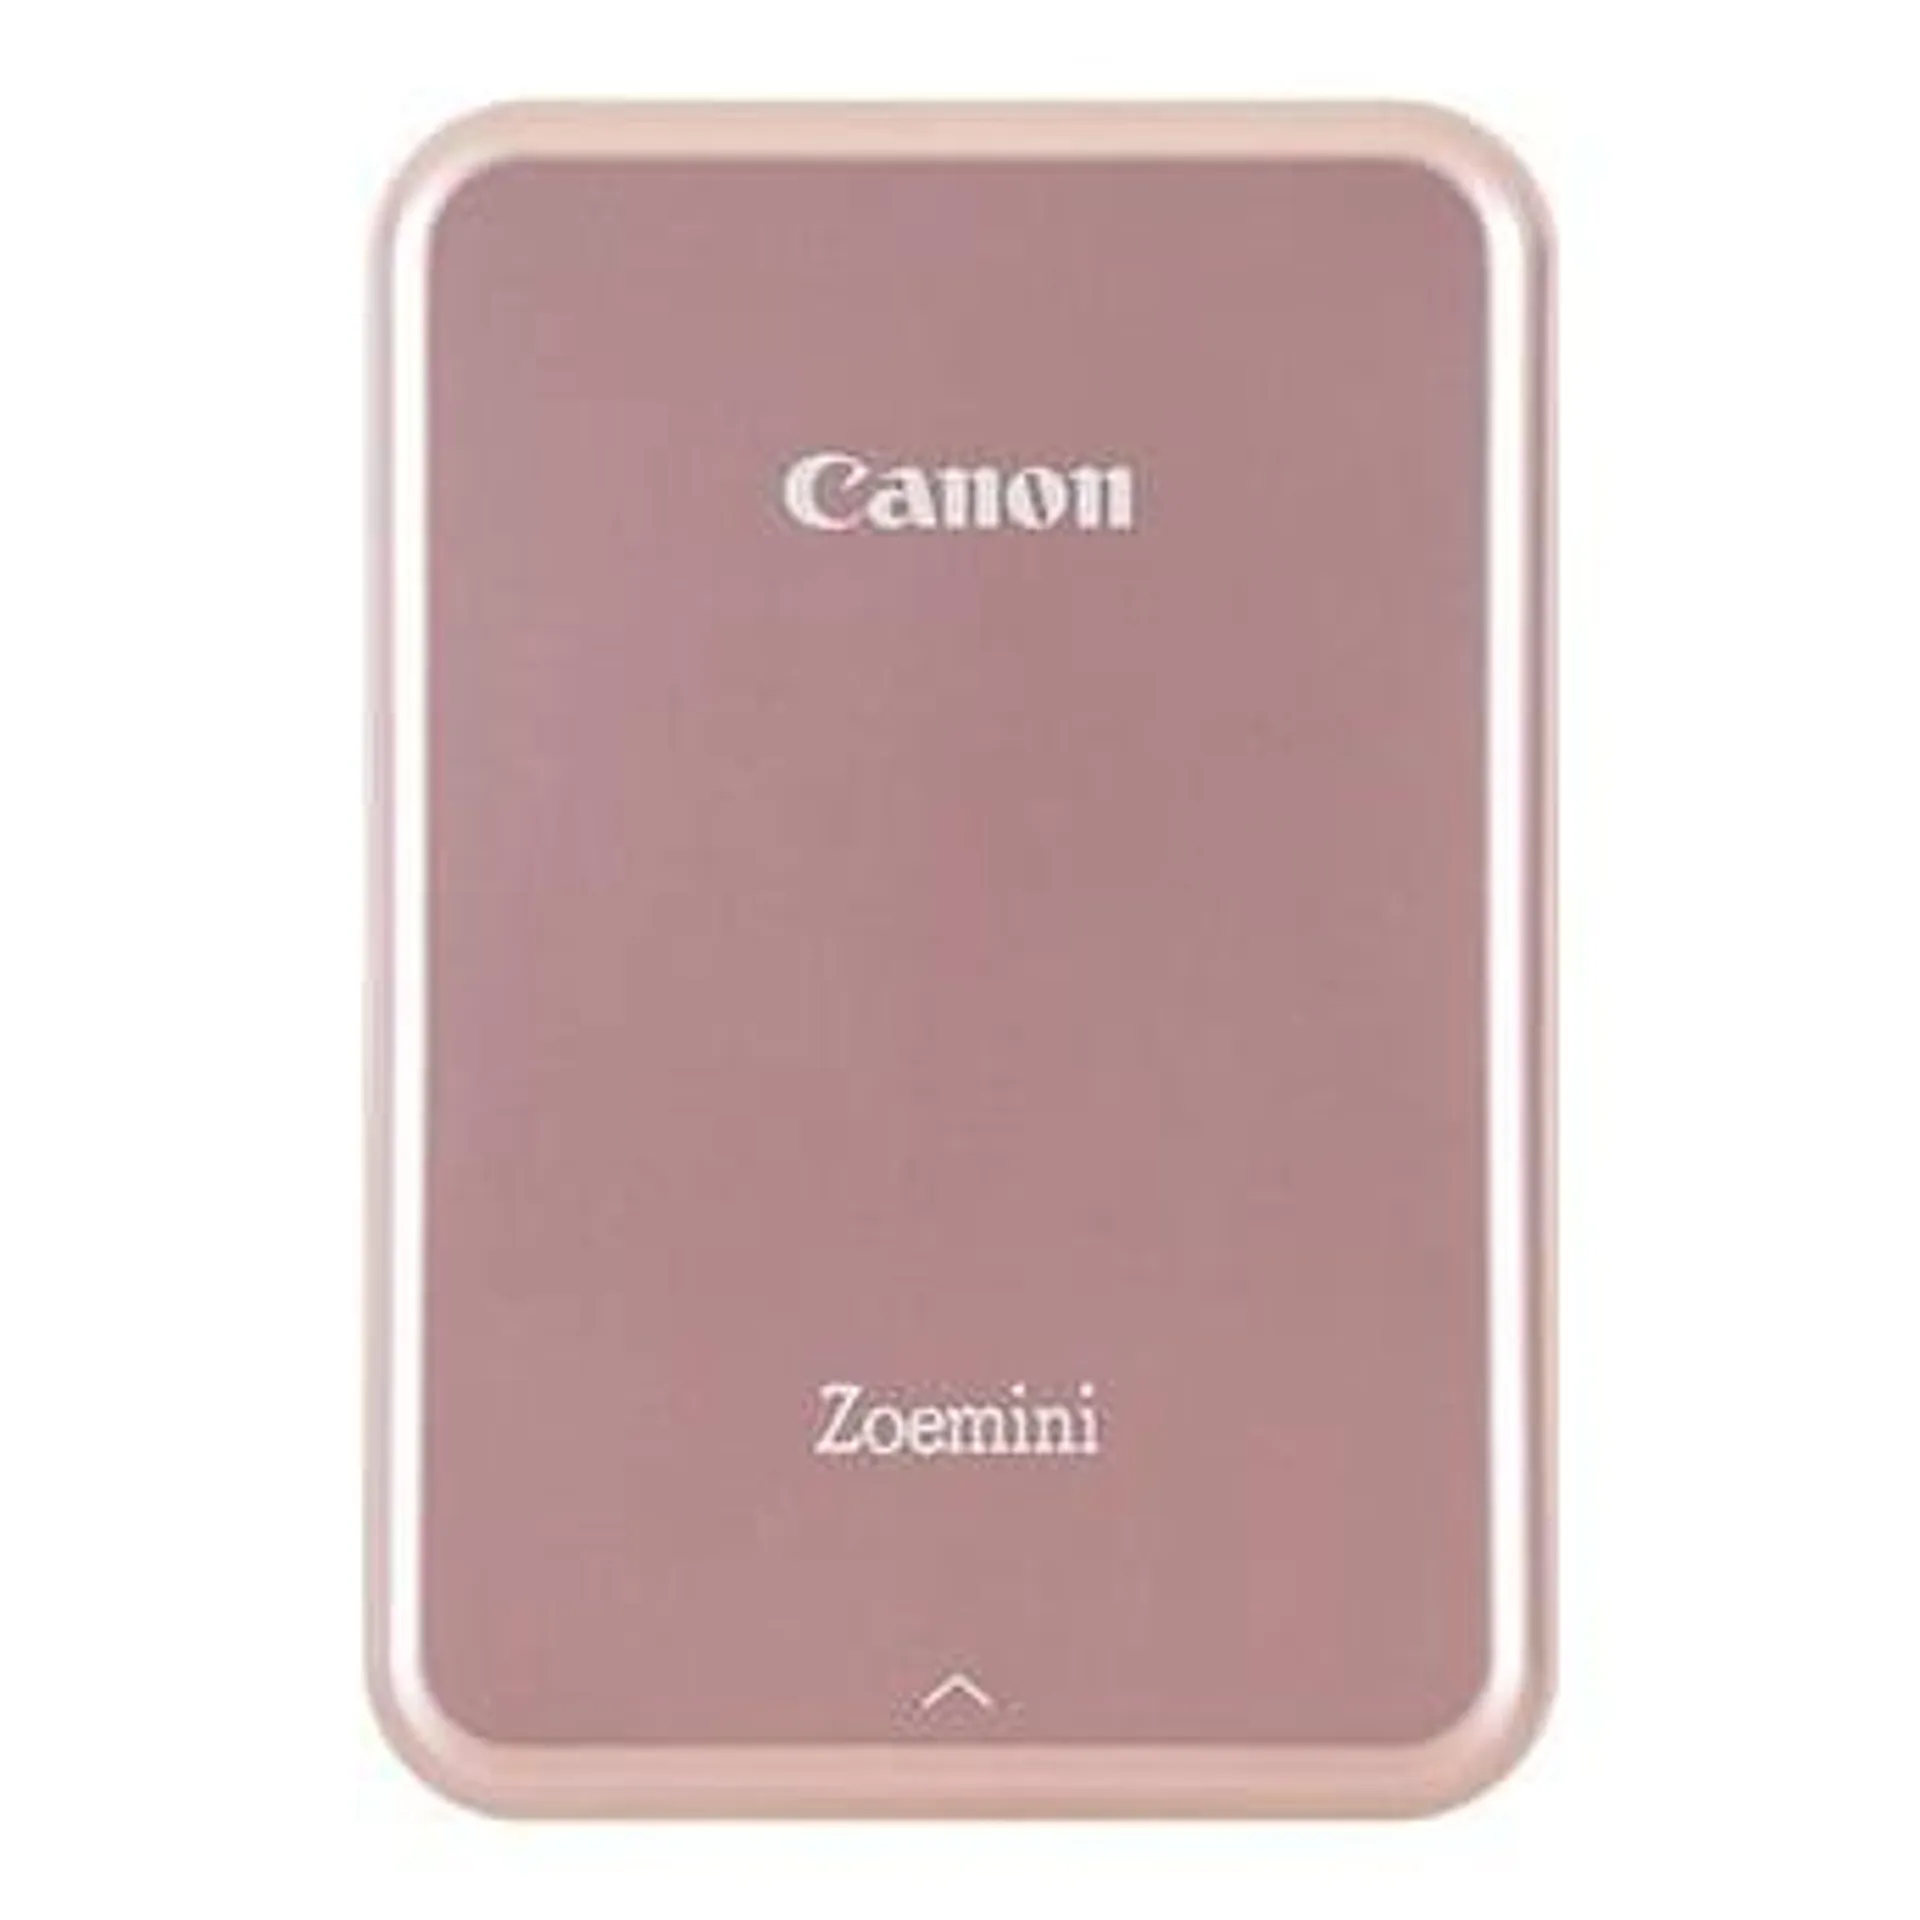 Canon Zoemini Instant Photo Printer (Rose Gold)